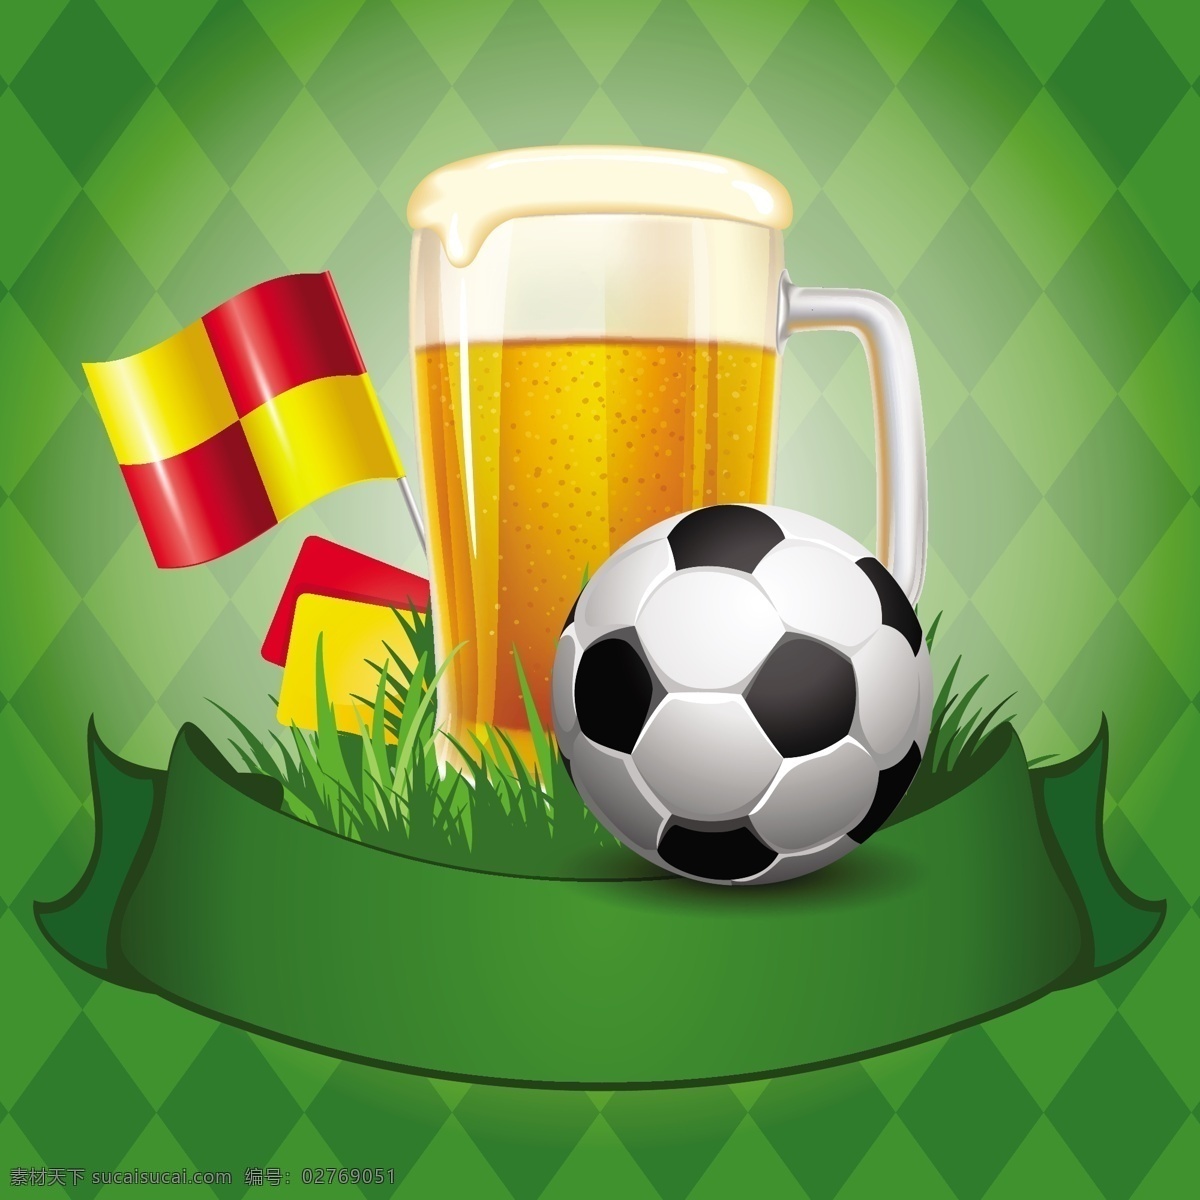 巴西 矢量 啤酒 世界杯 手绘 足球 足球比赛 模板下载 啤酒和足球 矢量图 日常生活